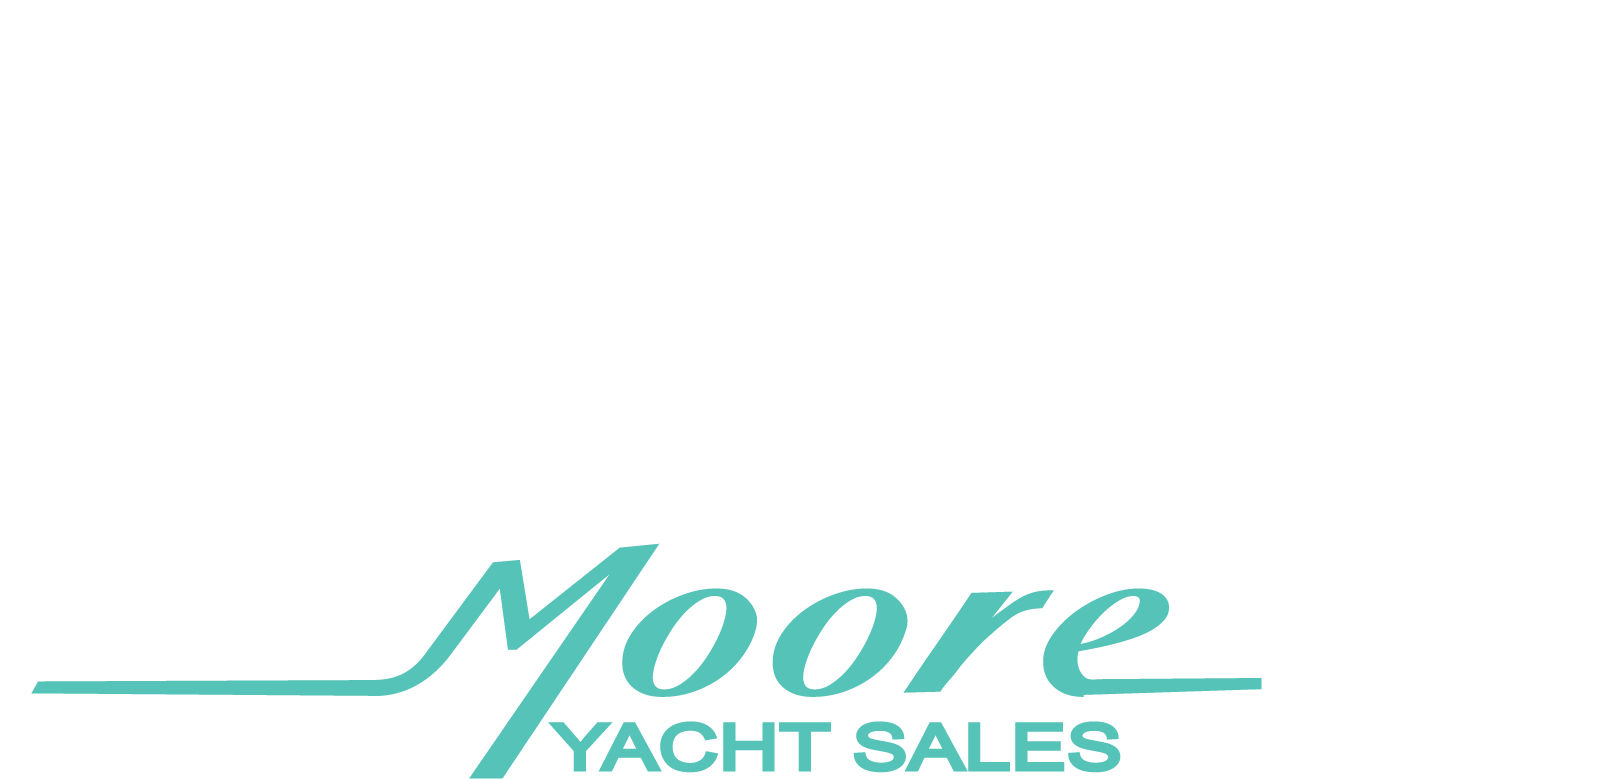 buzzards bay yacht sales florida